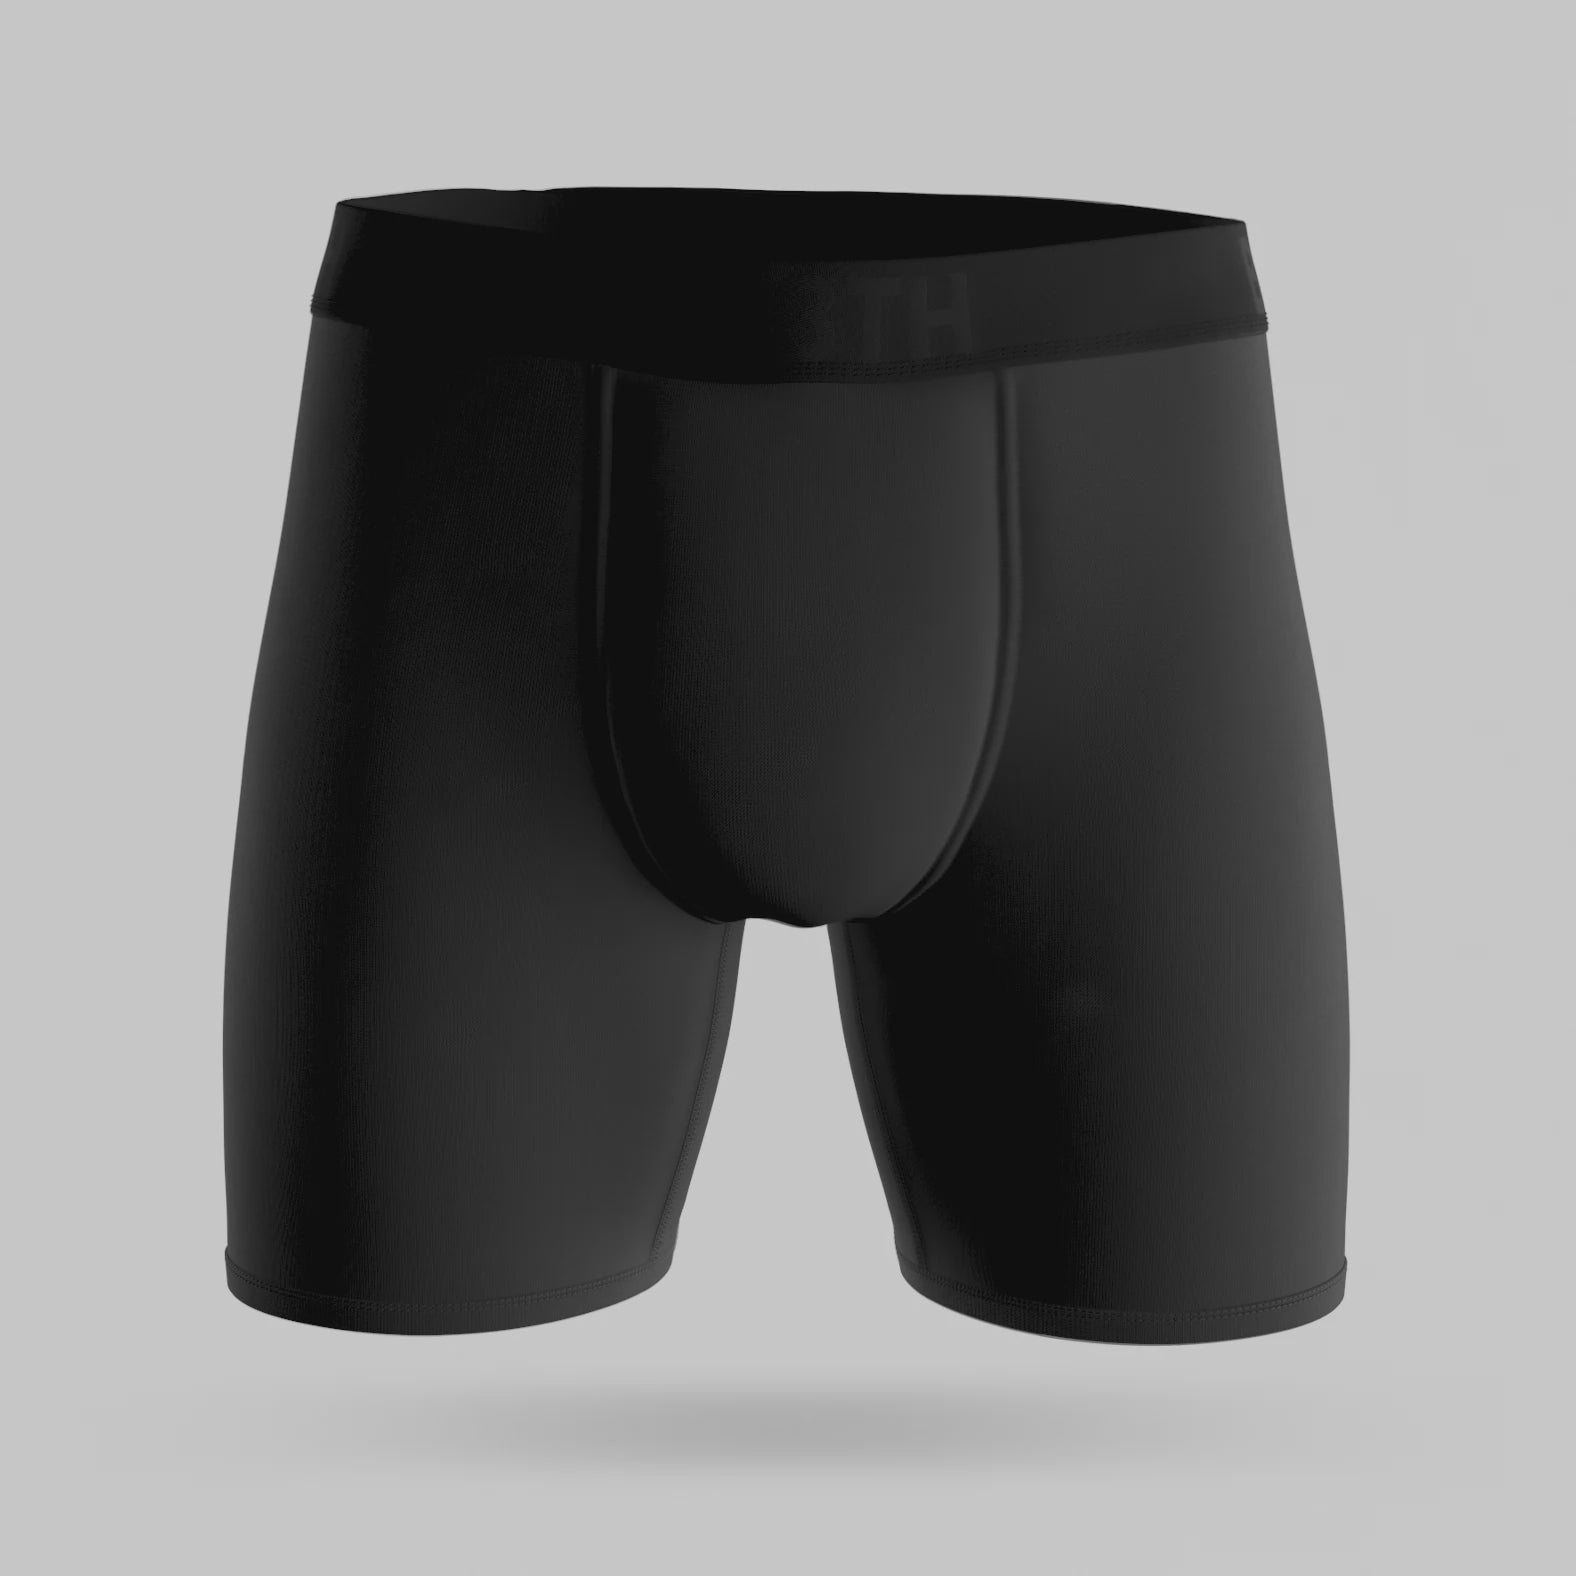 Summer Hockey Boxer Briefs 3-pack Underwear Bundle – GONGSHOW Canada